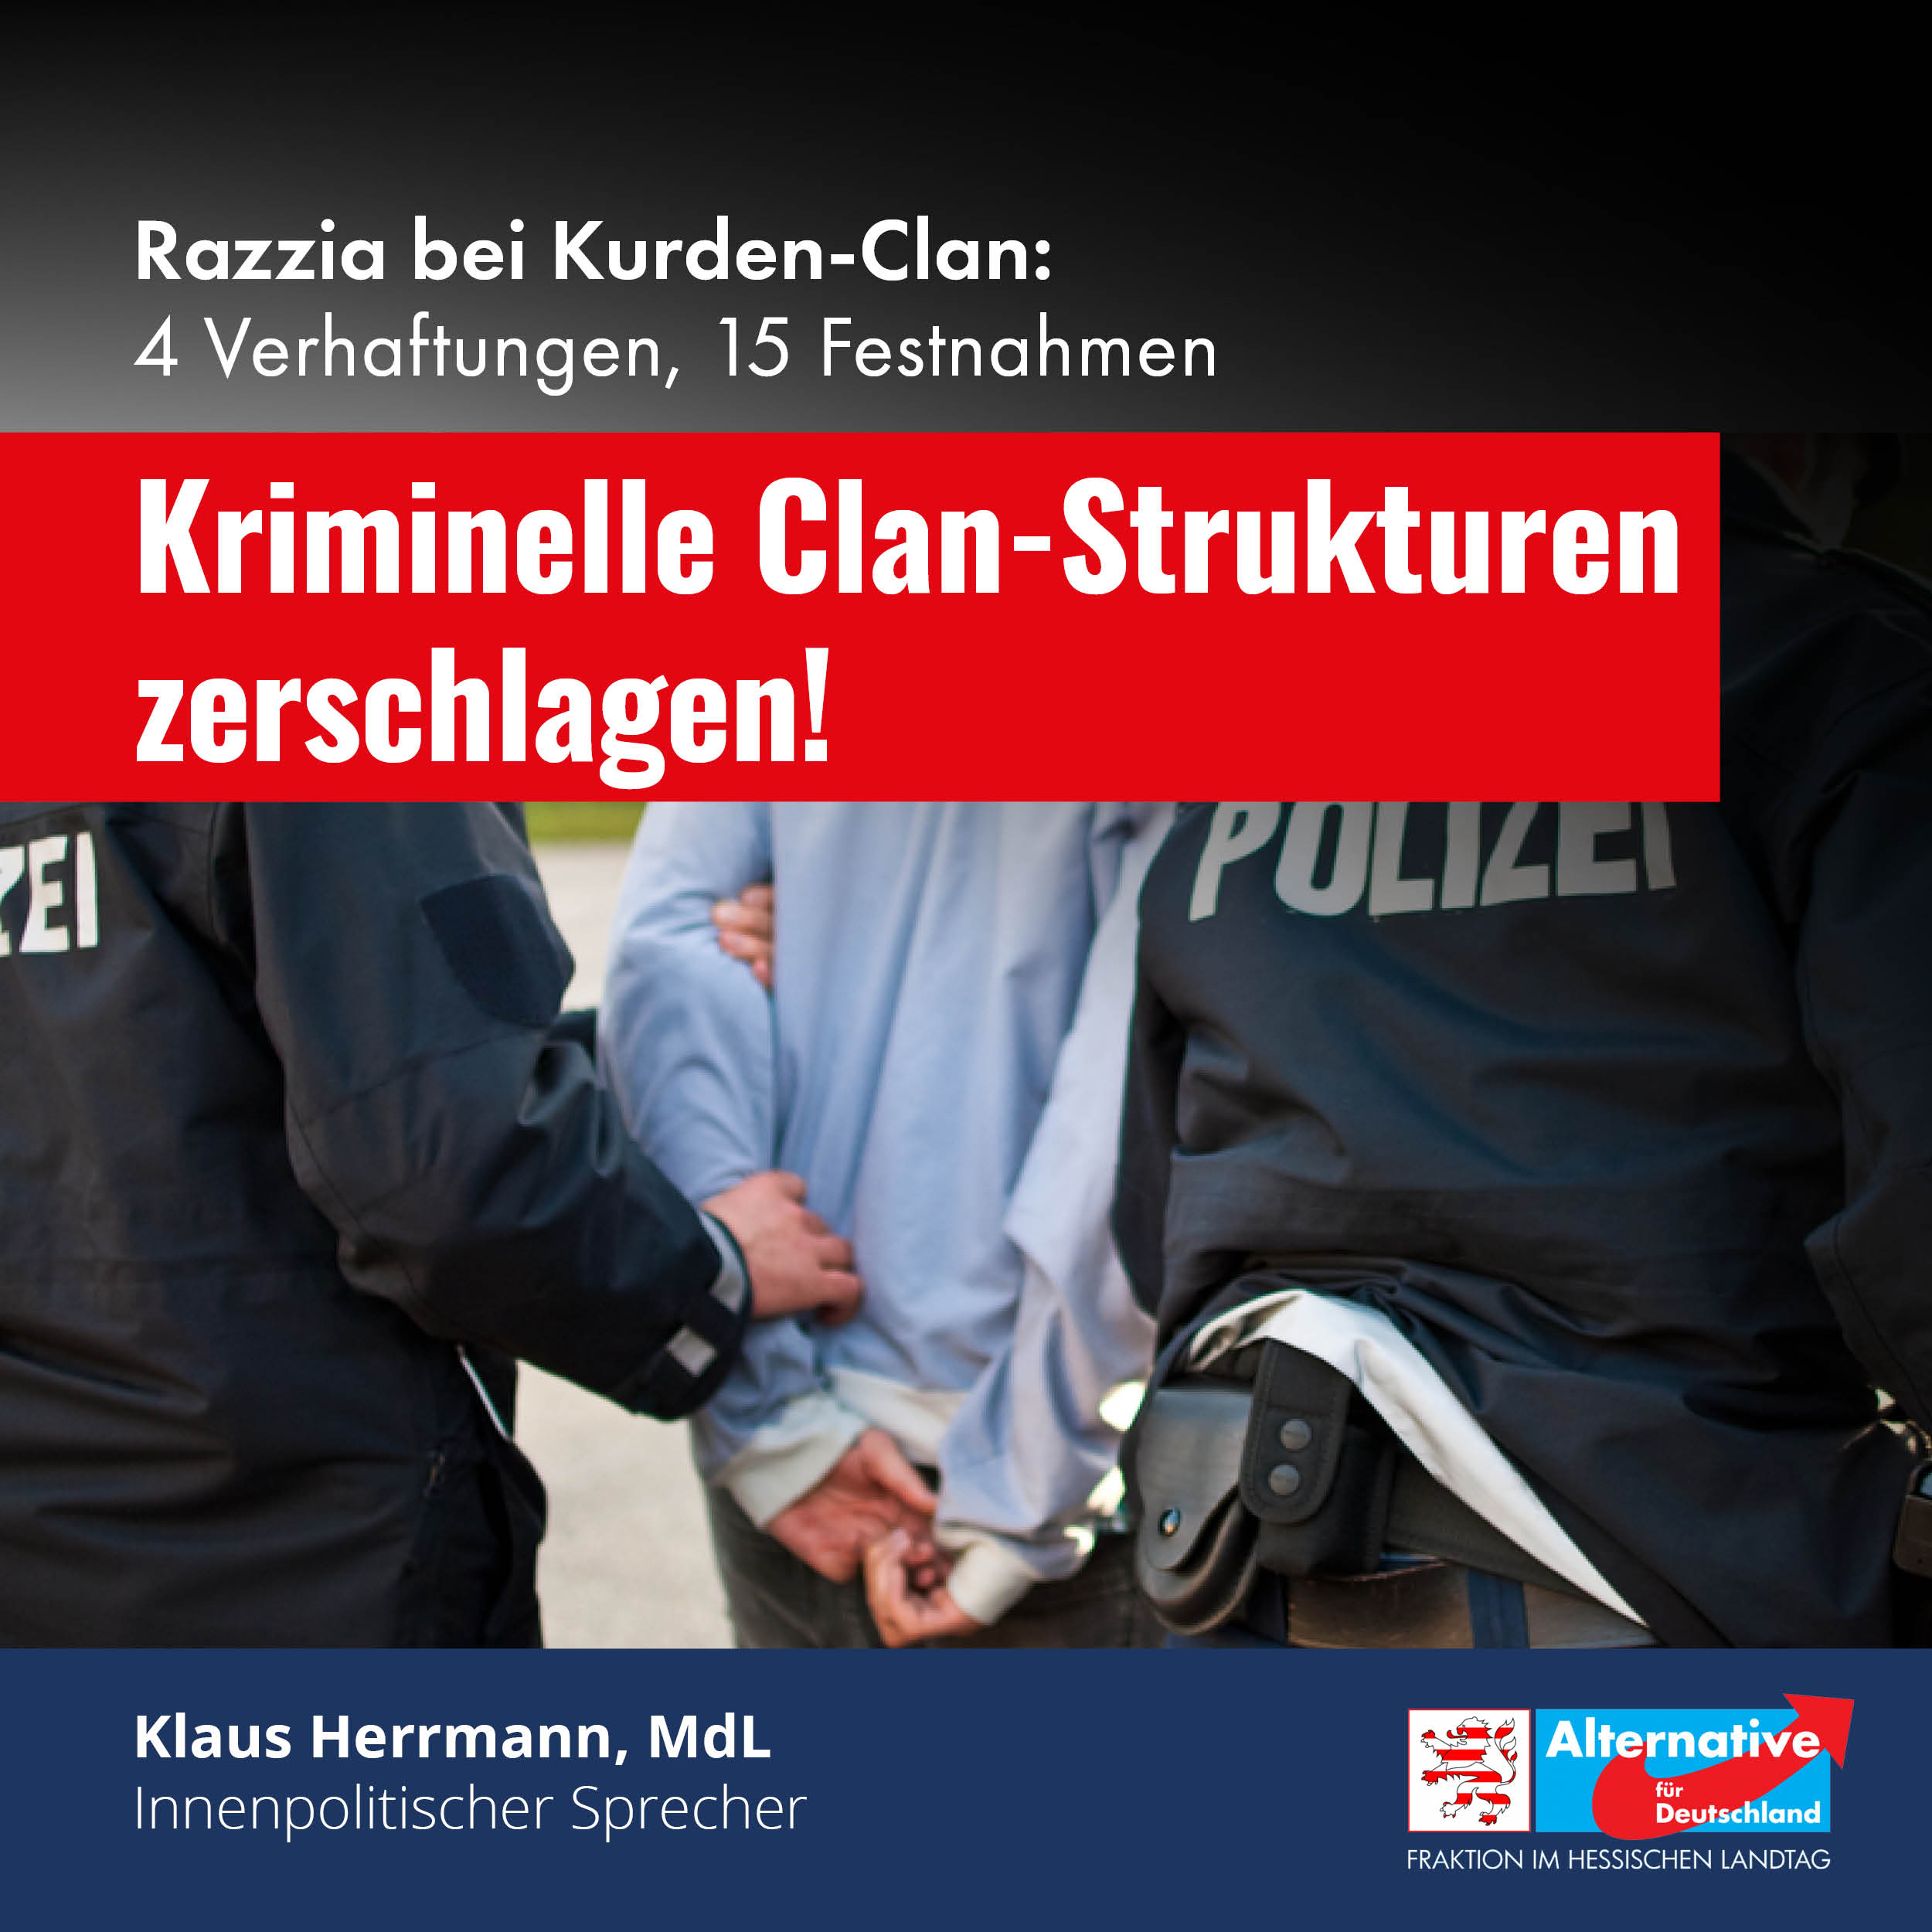 You are currently viewing Kriminelle Clan-Strukturen zerschlagen!